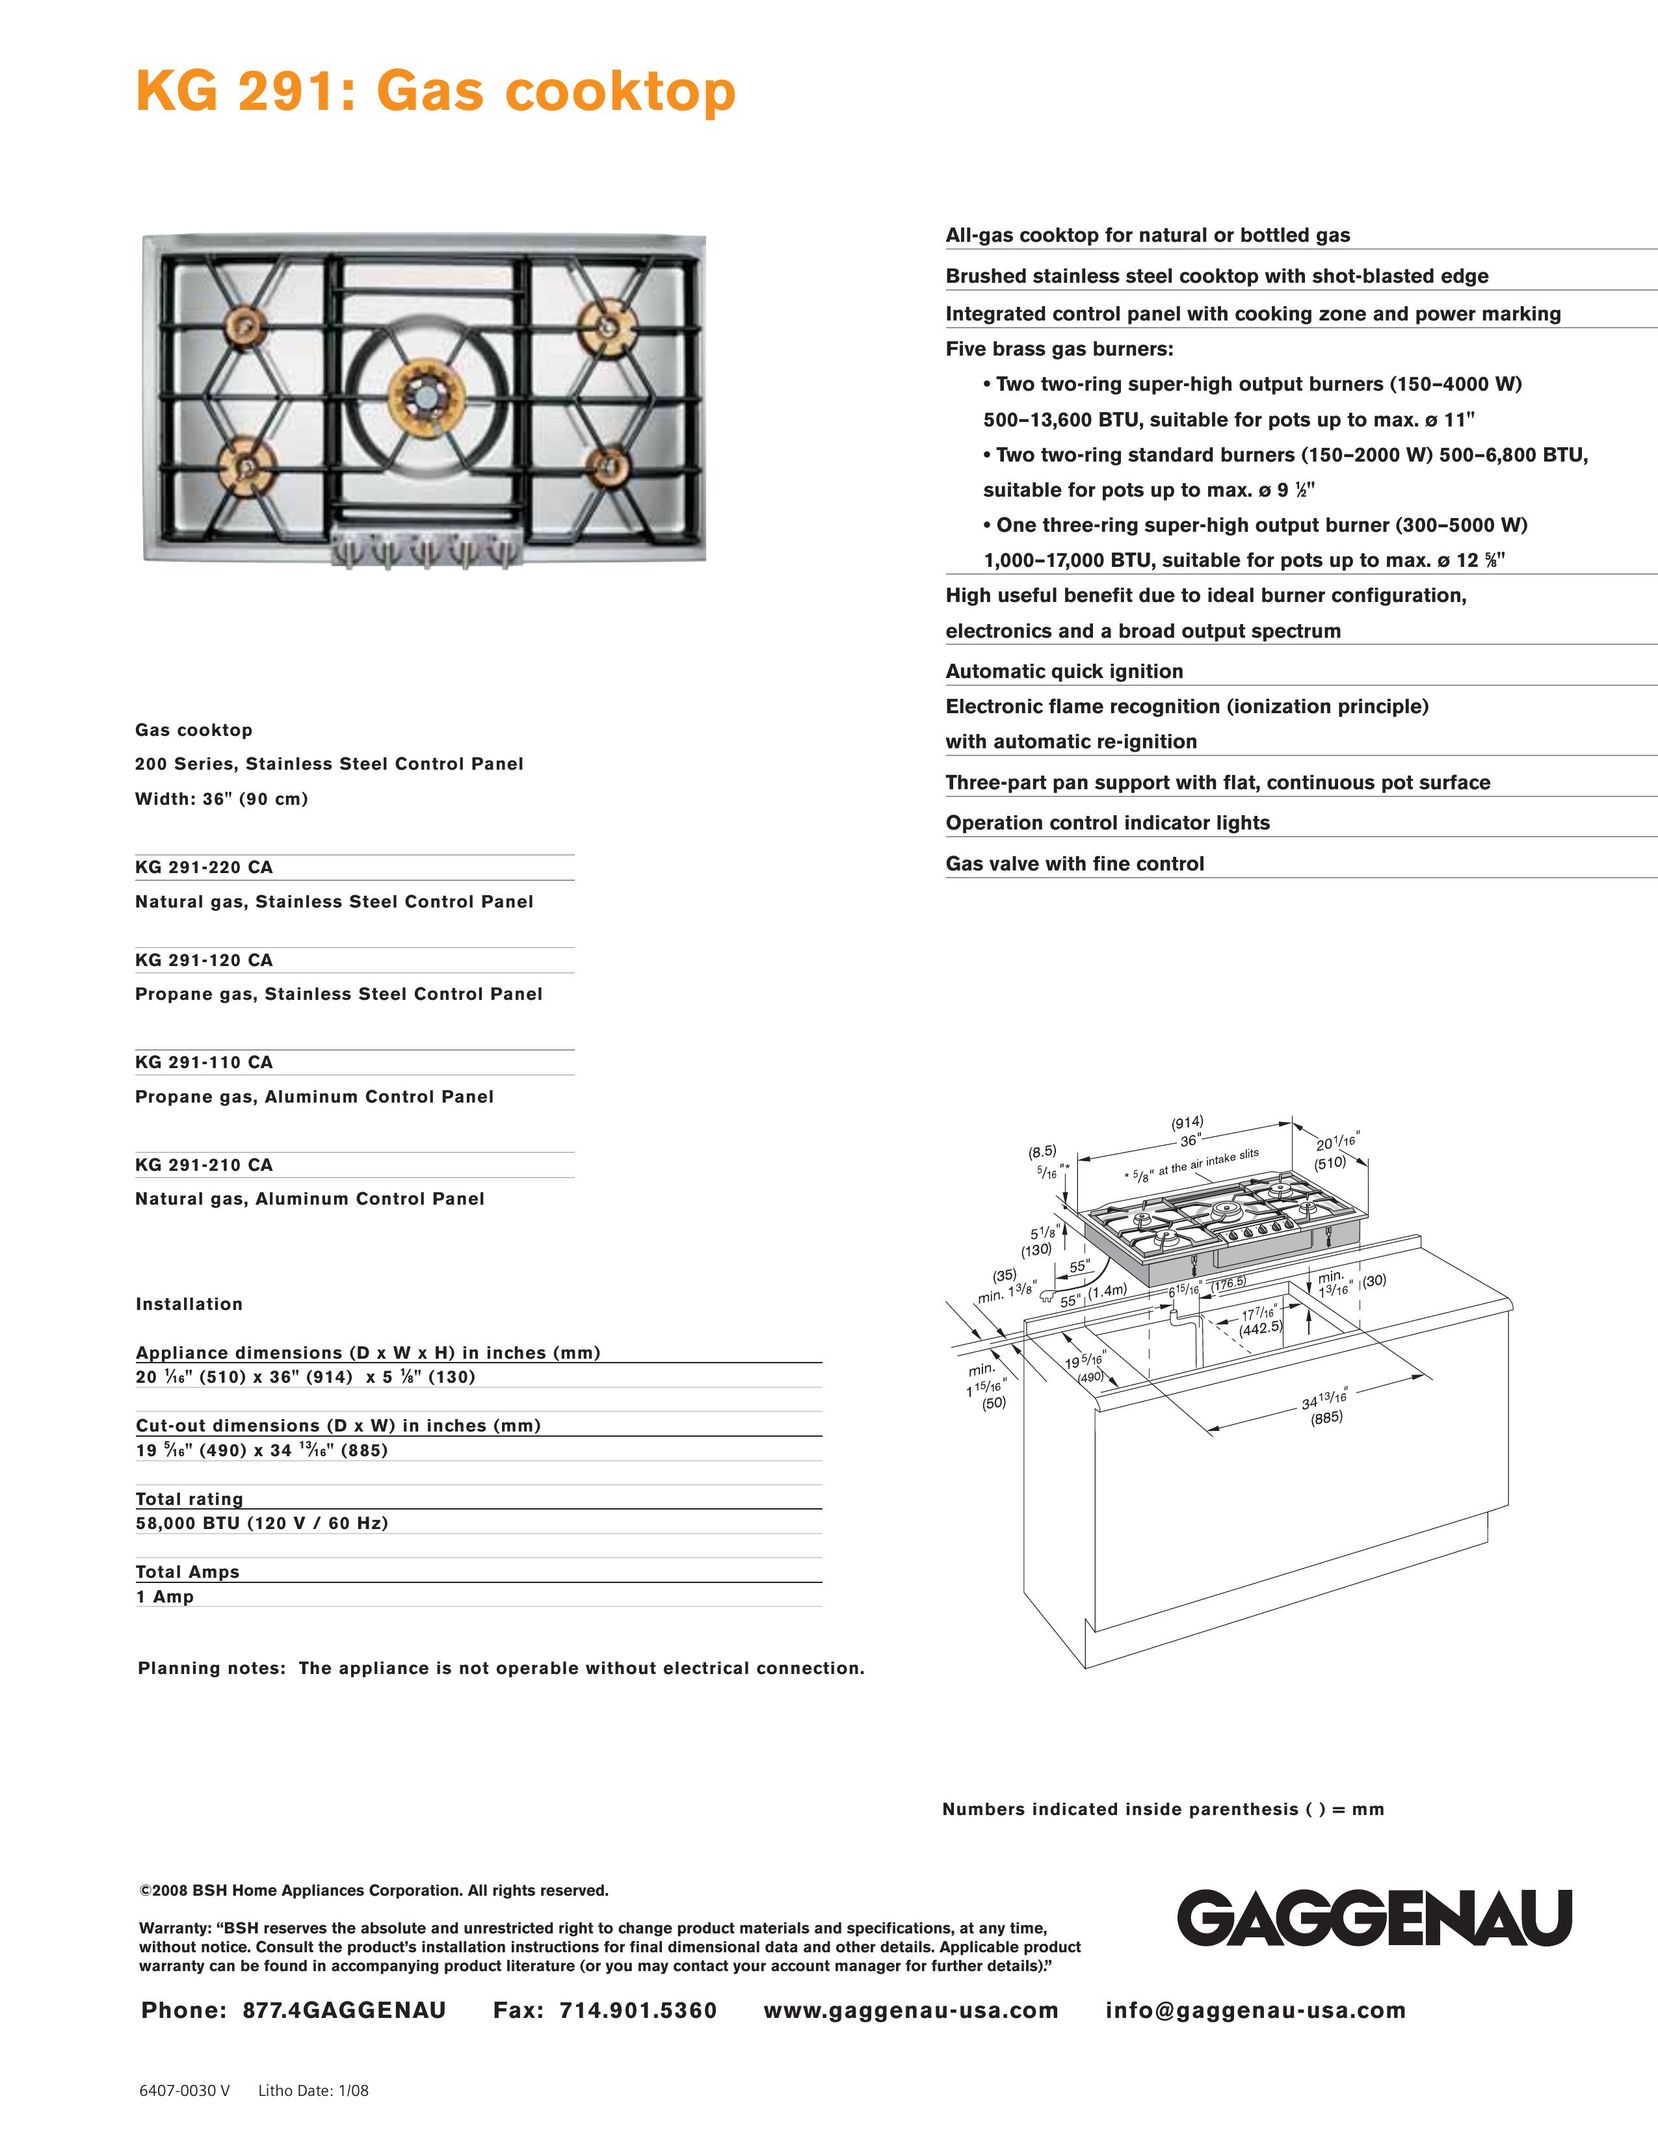 Gaggenau KG 291-220 CA Cooktop User Manual